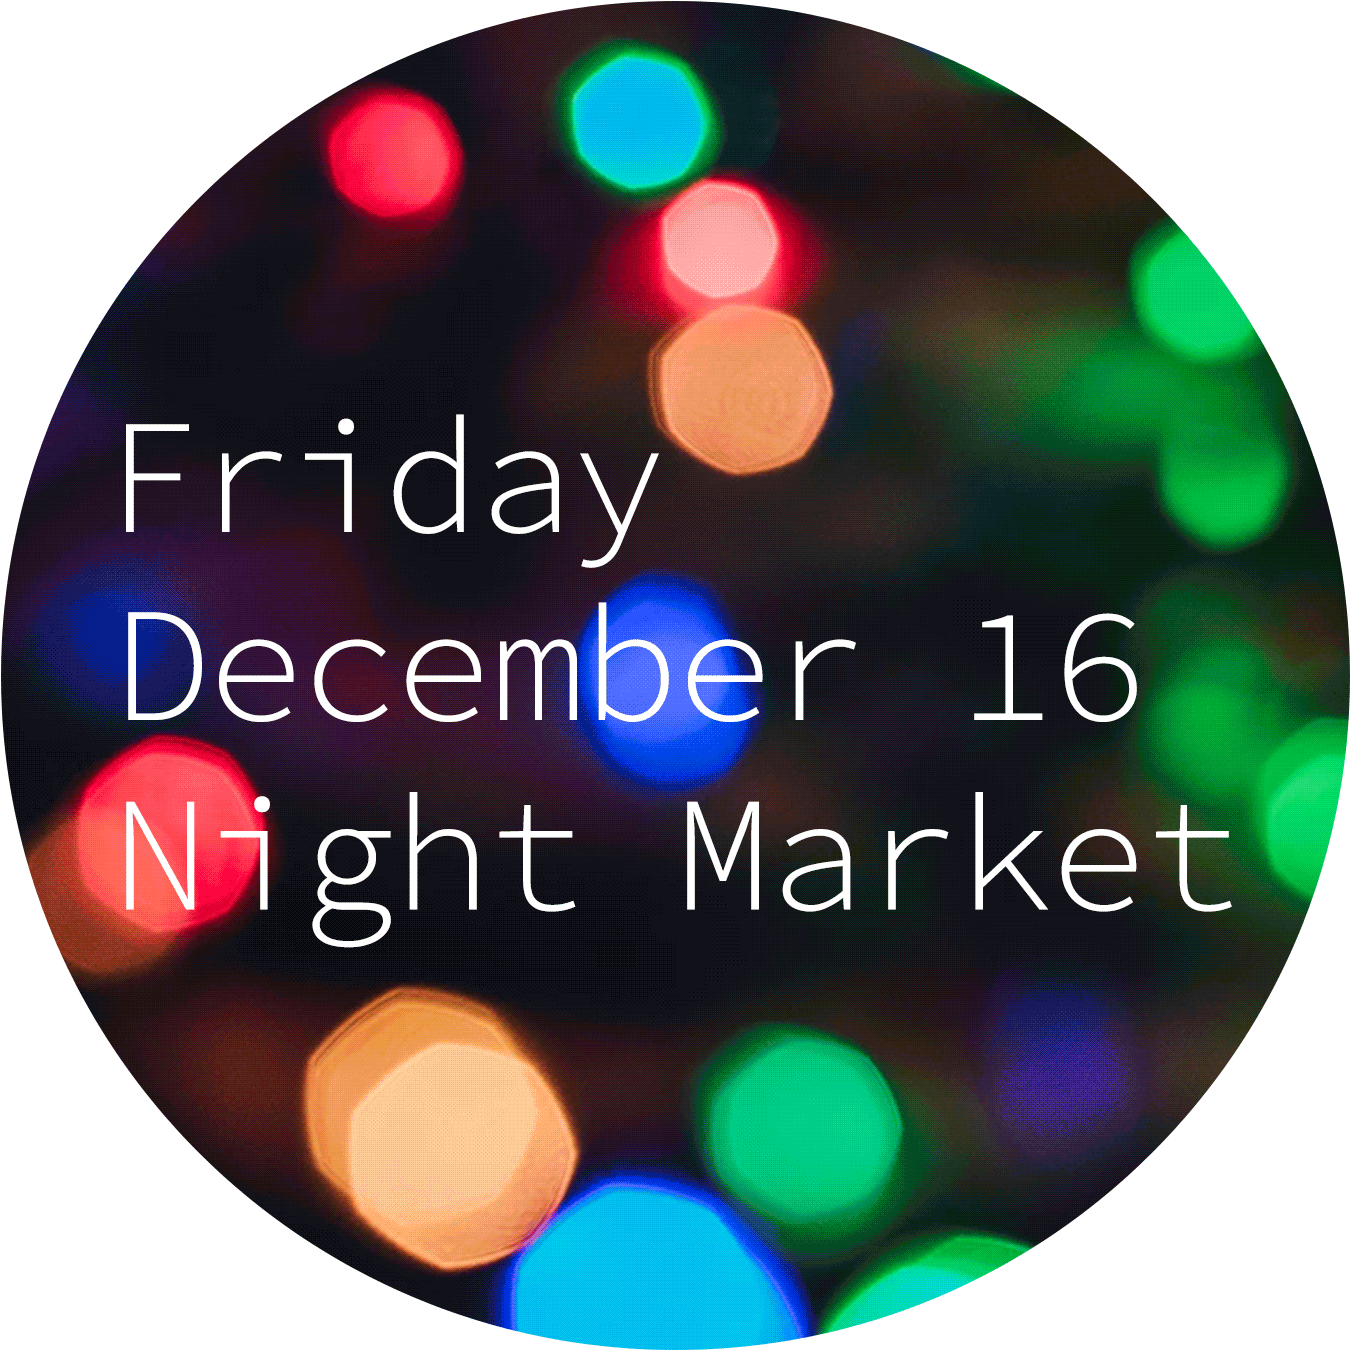 Friday december 16 night market.